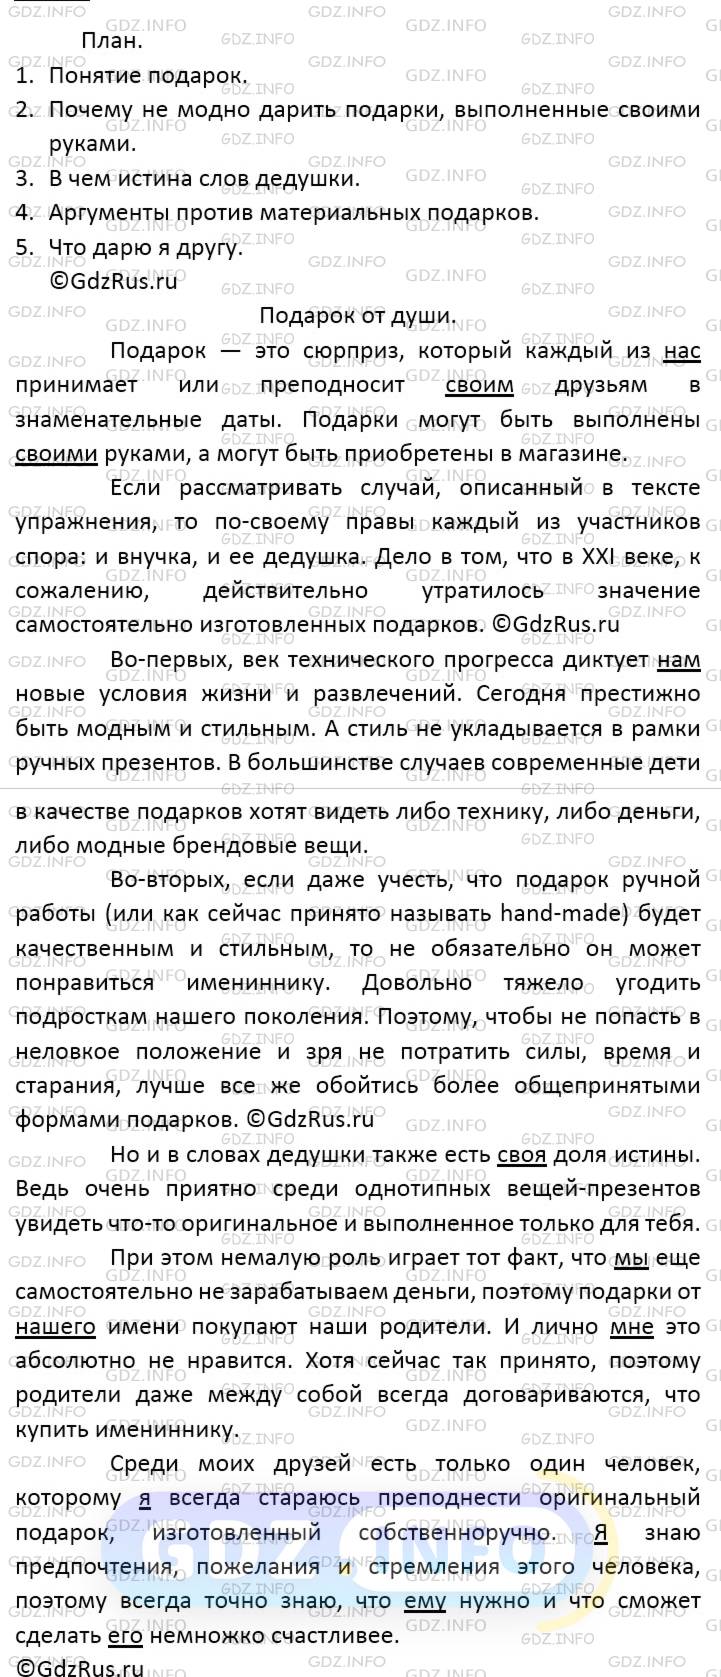 Фото решения 4: Номер №528 из ГДЗ по Русскому языку 6 класс: Ладыженская Т.А. 2019г.